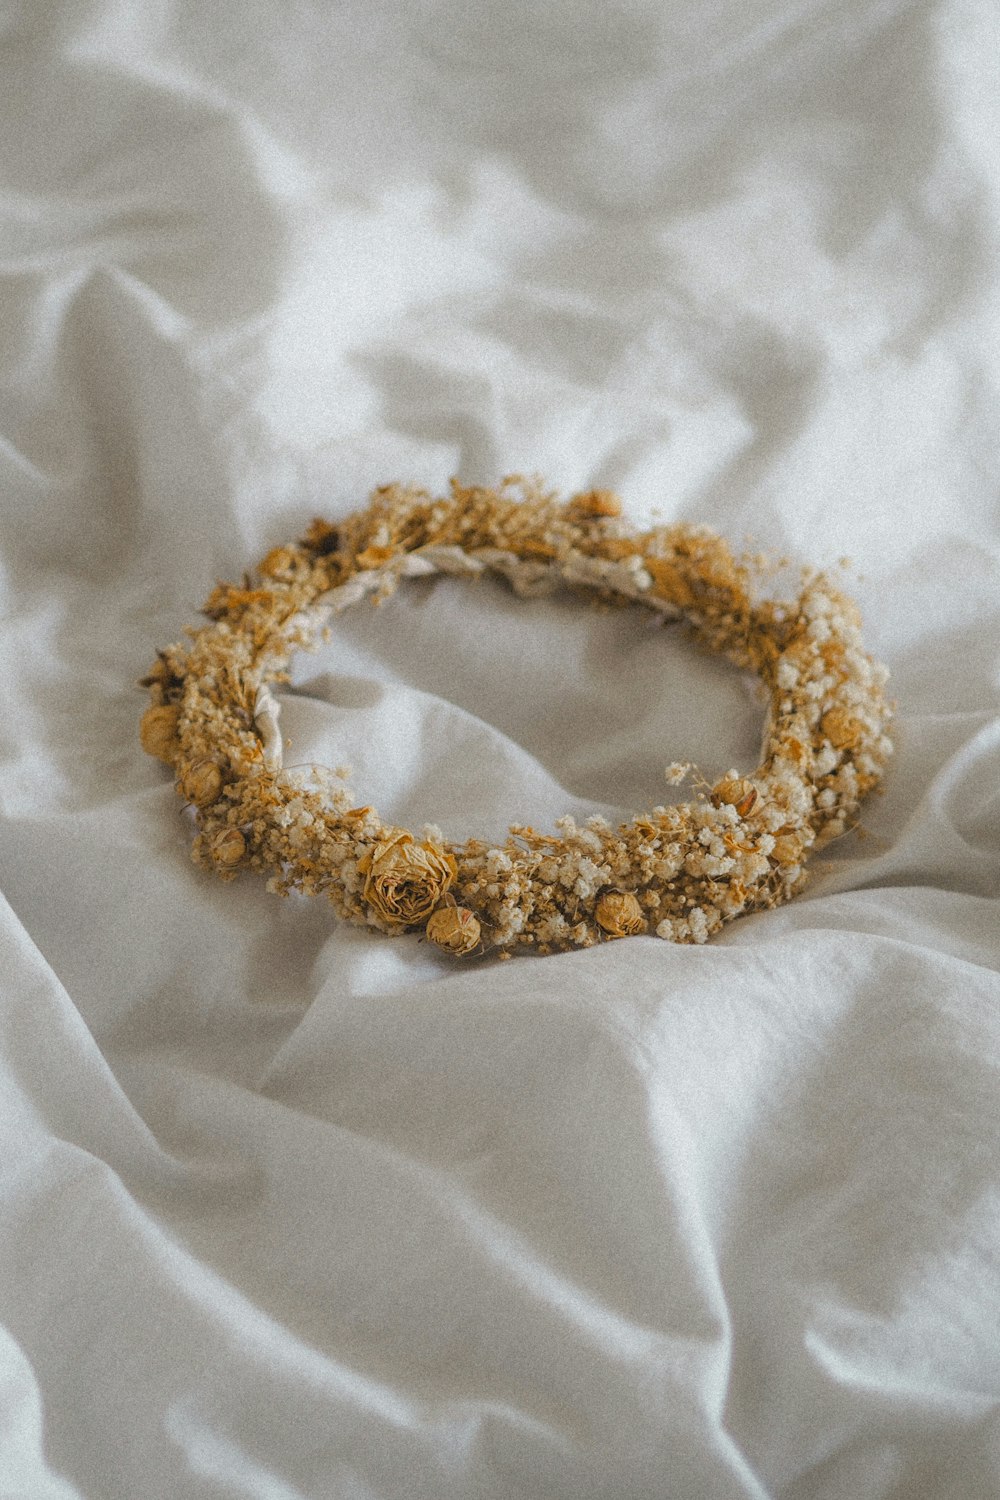 a close up of a bracelet on a bed